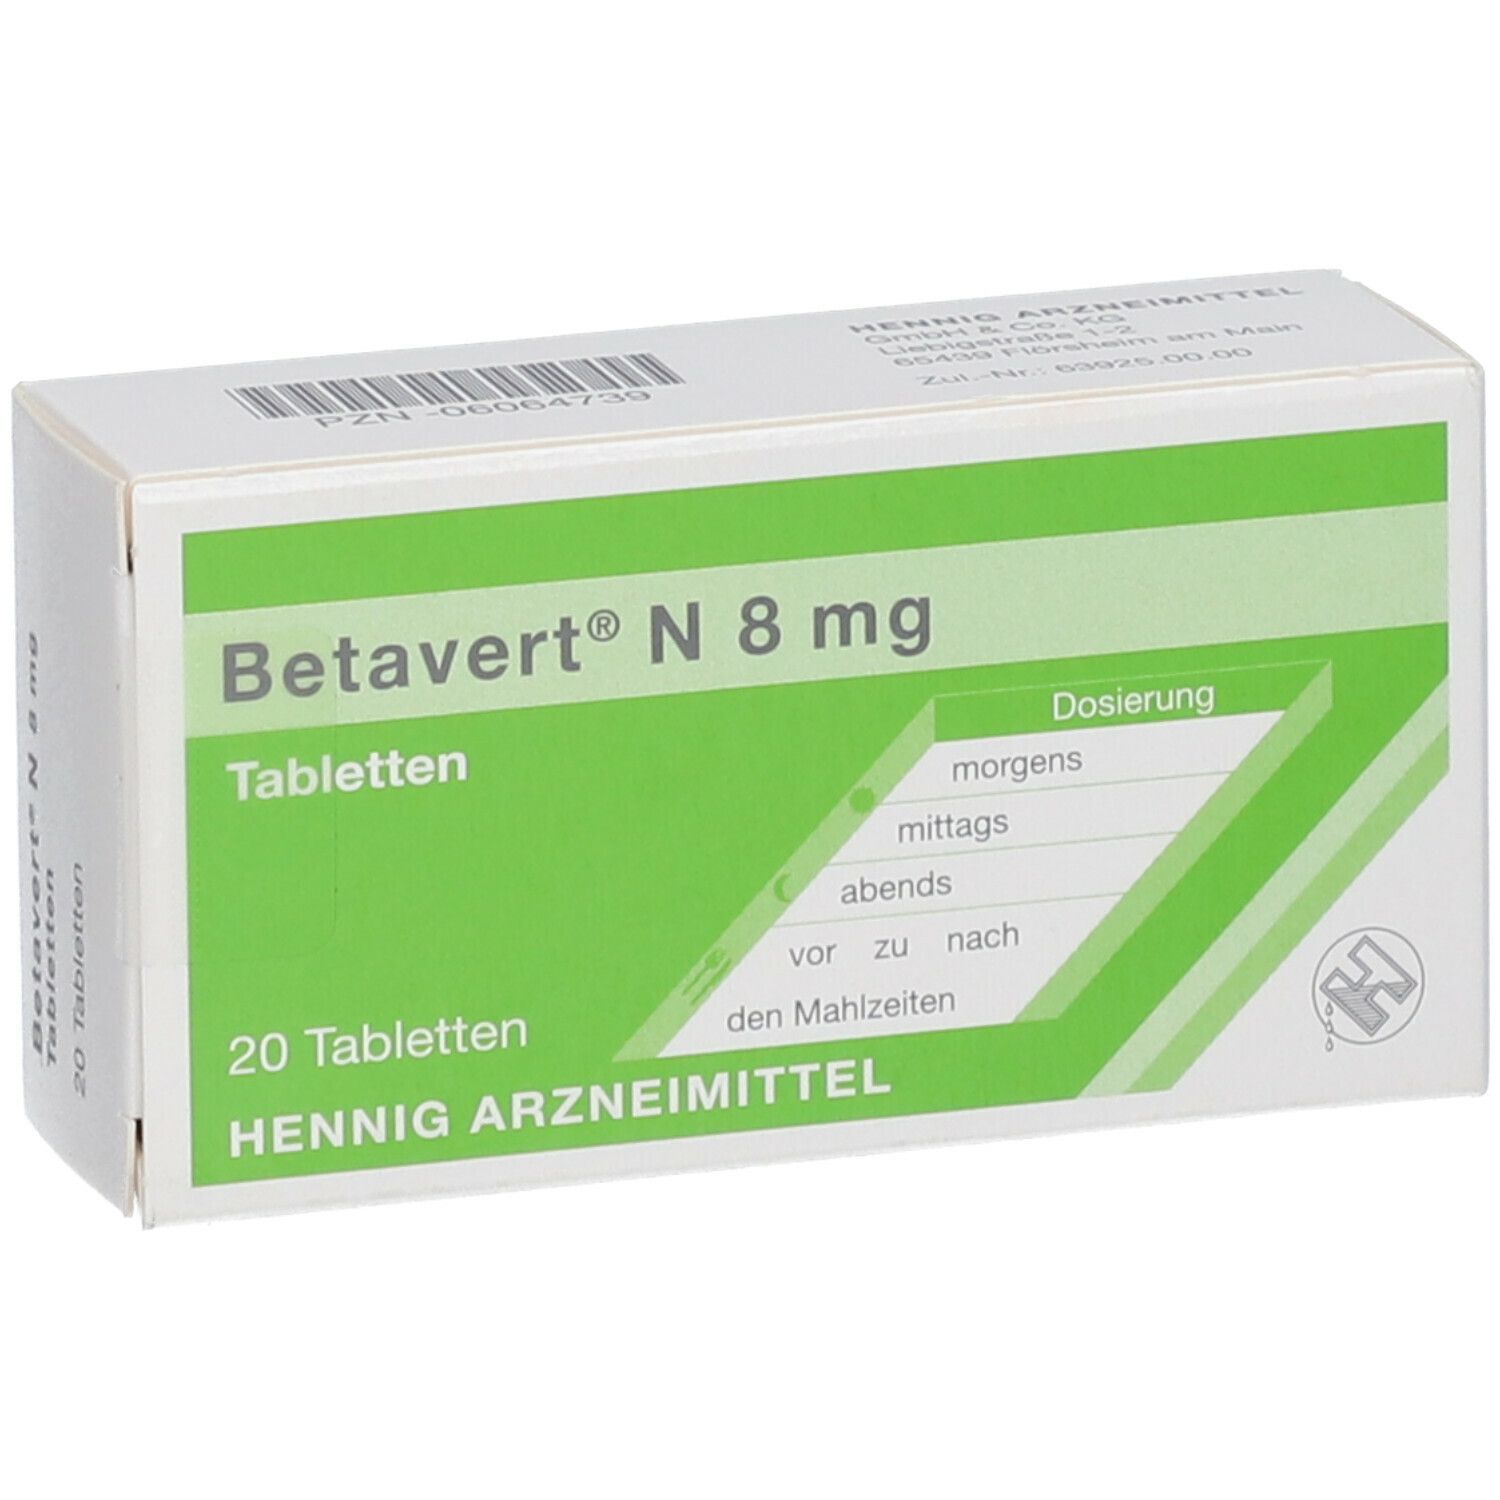 Betavert® N 8 mg